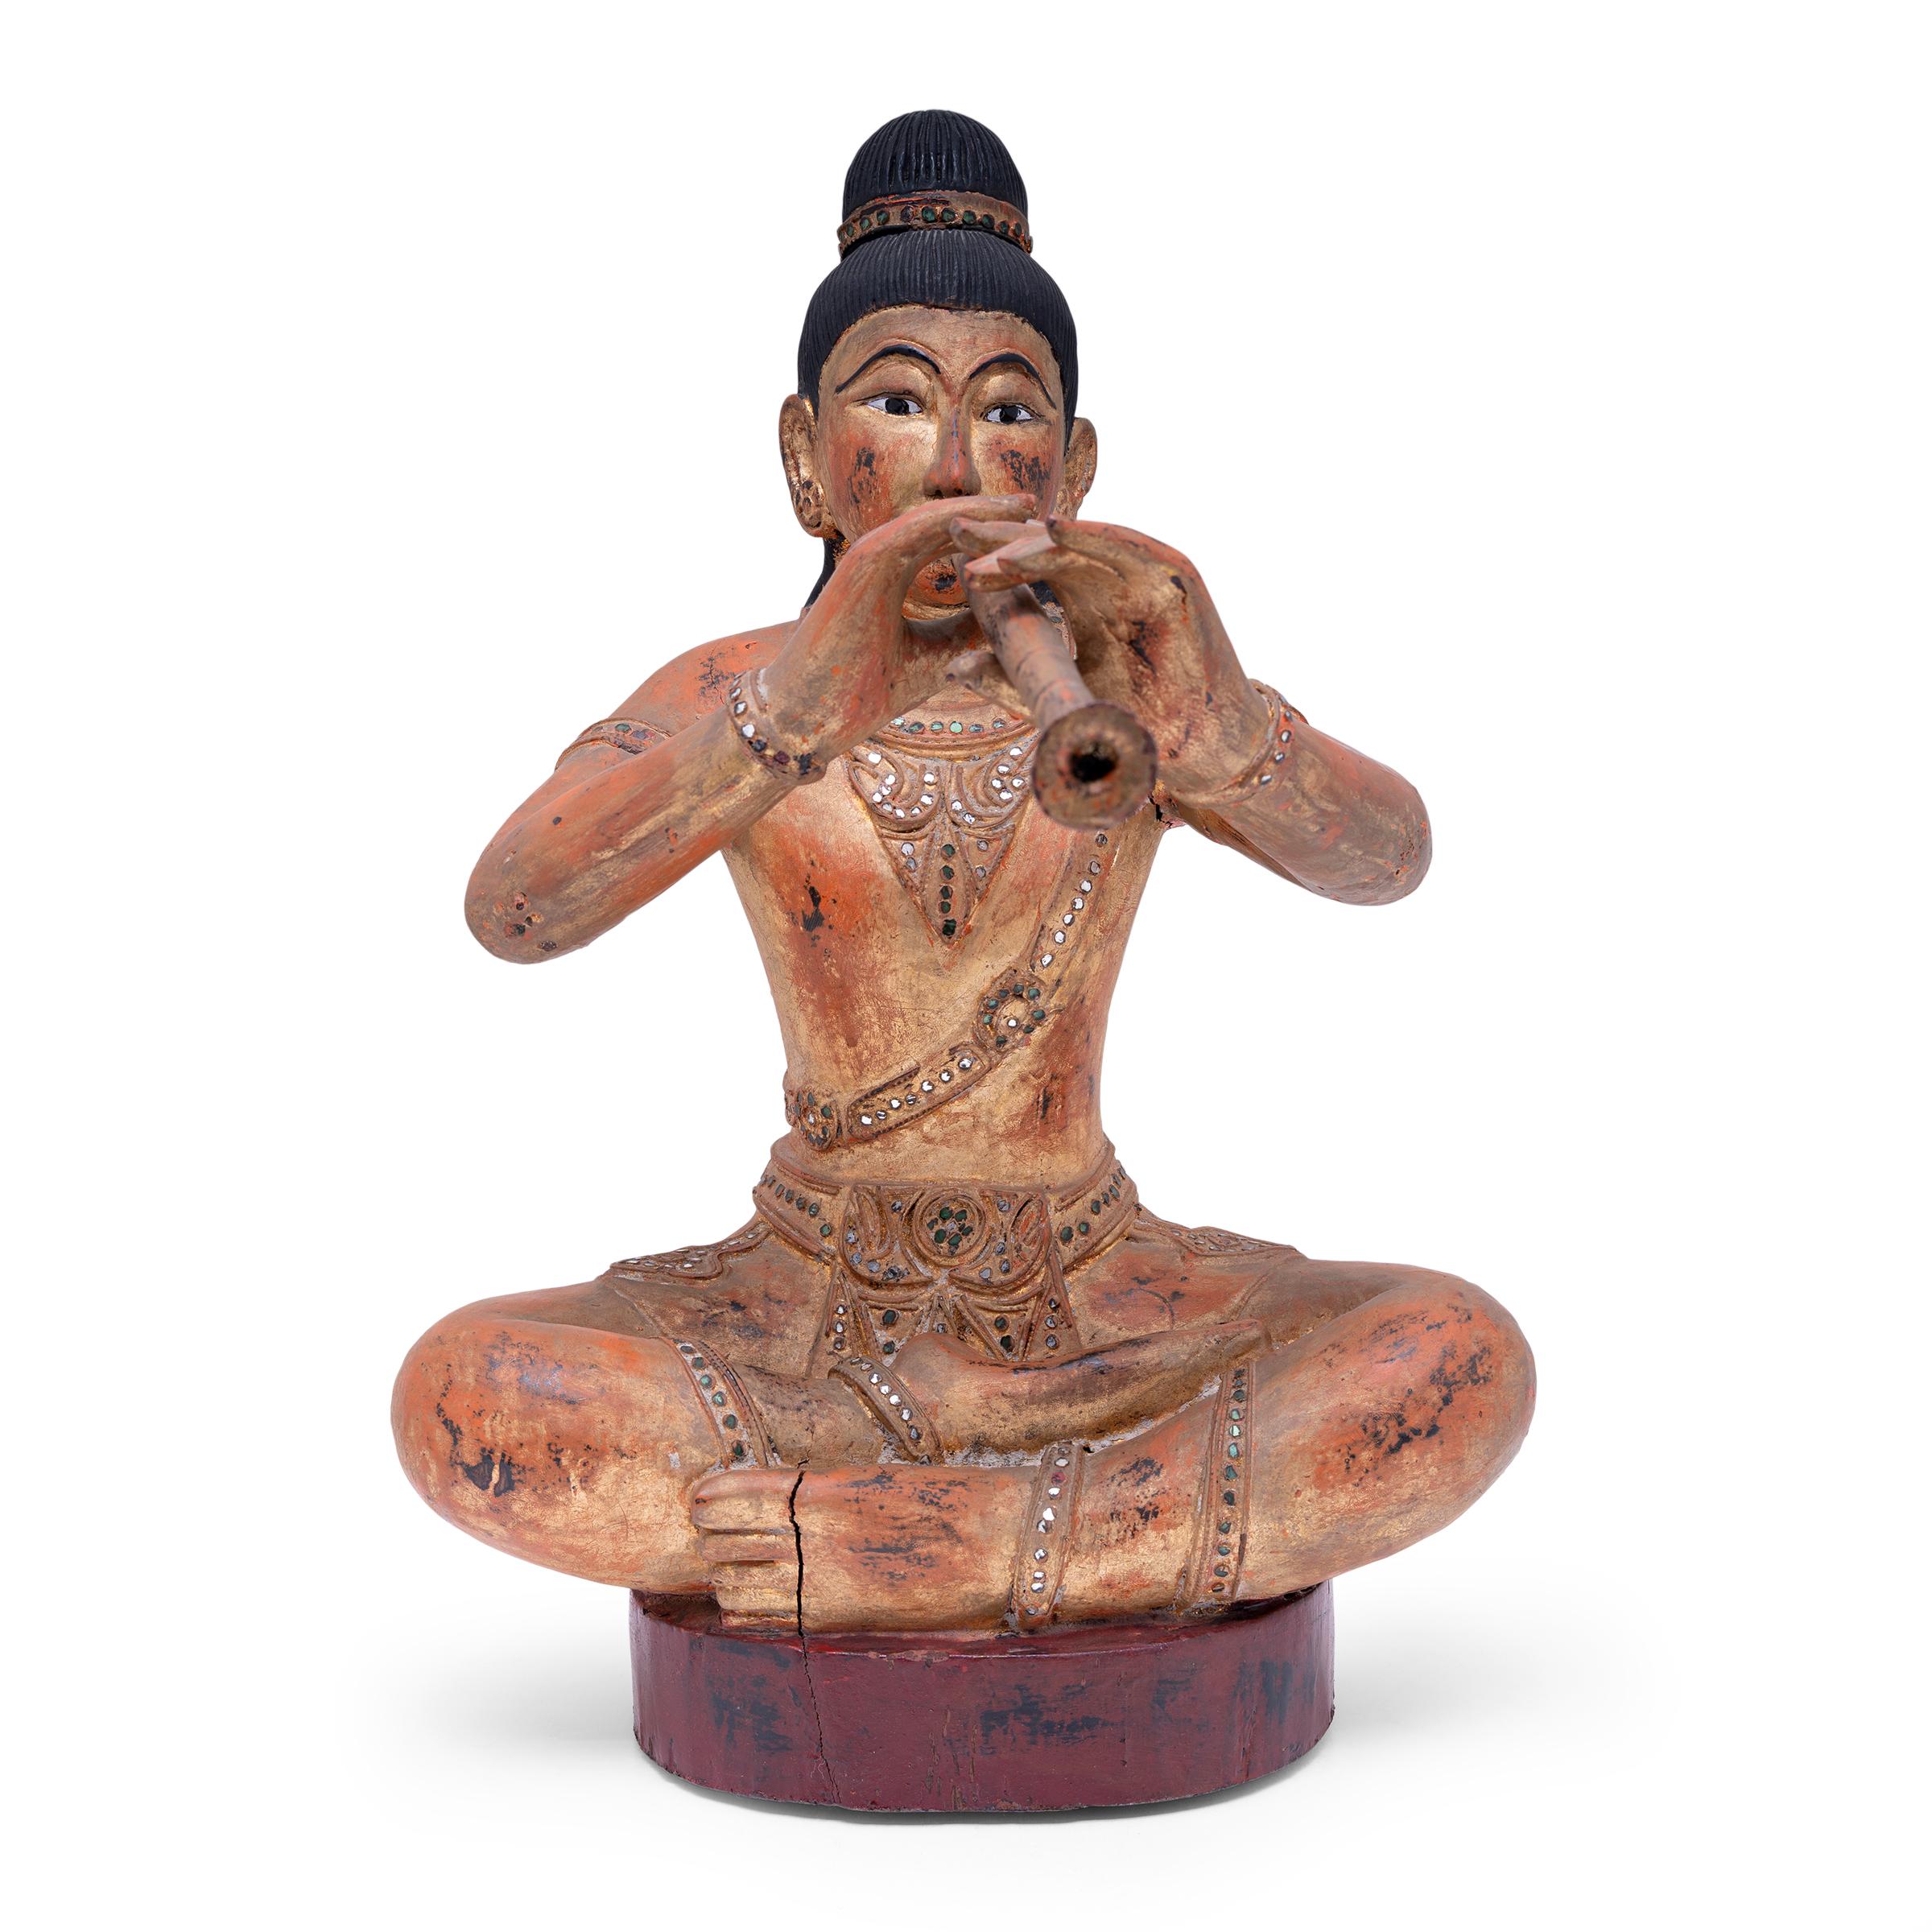 Diese sitzende burmesische Figur stellt einen Musiker in ewigem Gesang dar. Die hölzerne Figur ist handgeschnitzt und zeigt eine sitzende Haltung mit gekreuzten Beinen und ausgestreckten Armen, um ihr Instrument zu halten, höchstwahrscheinlich eine